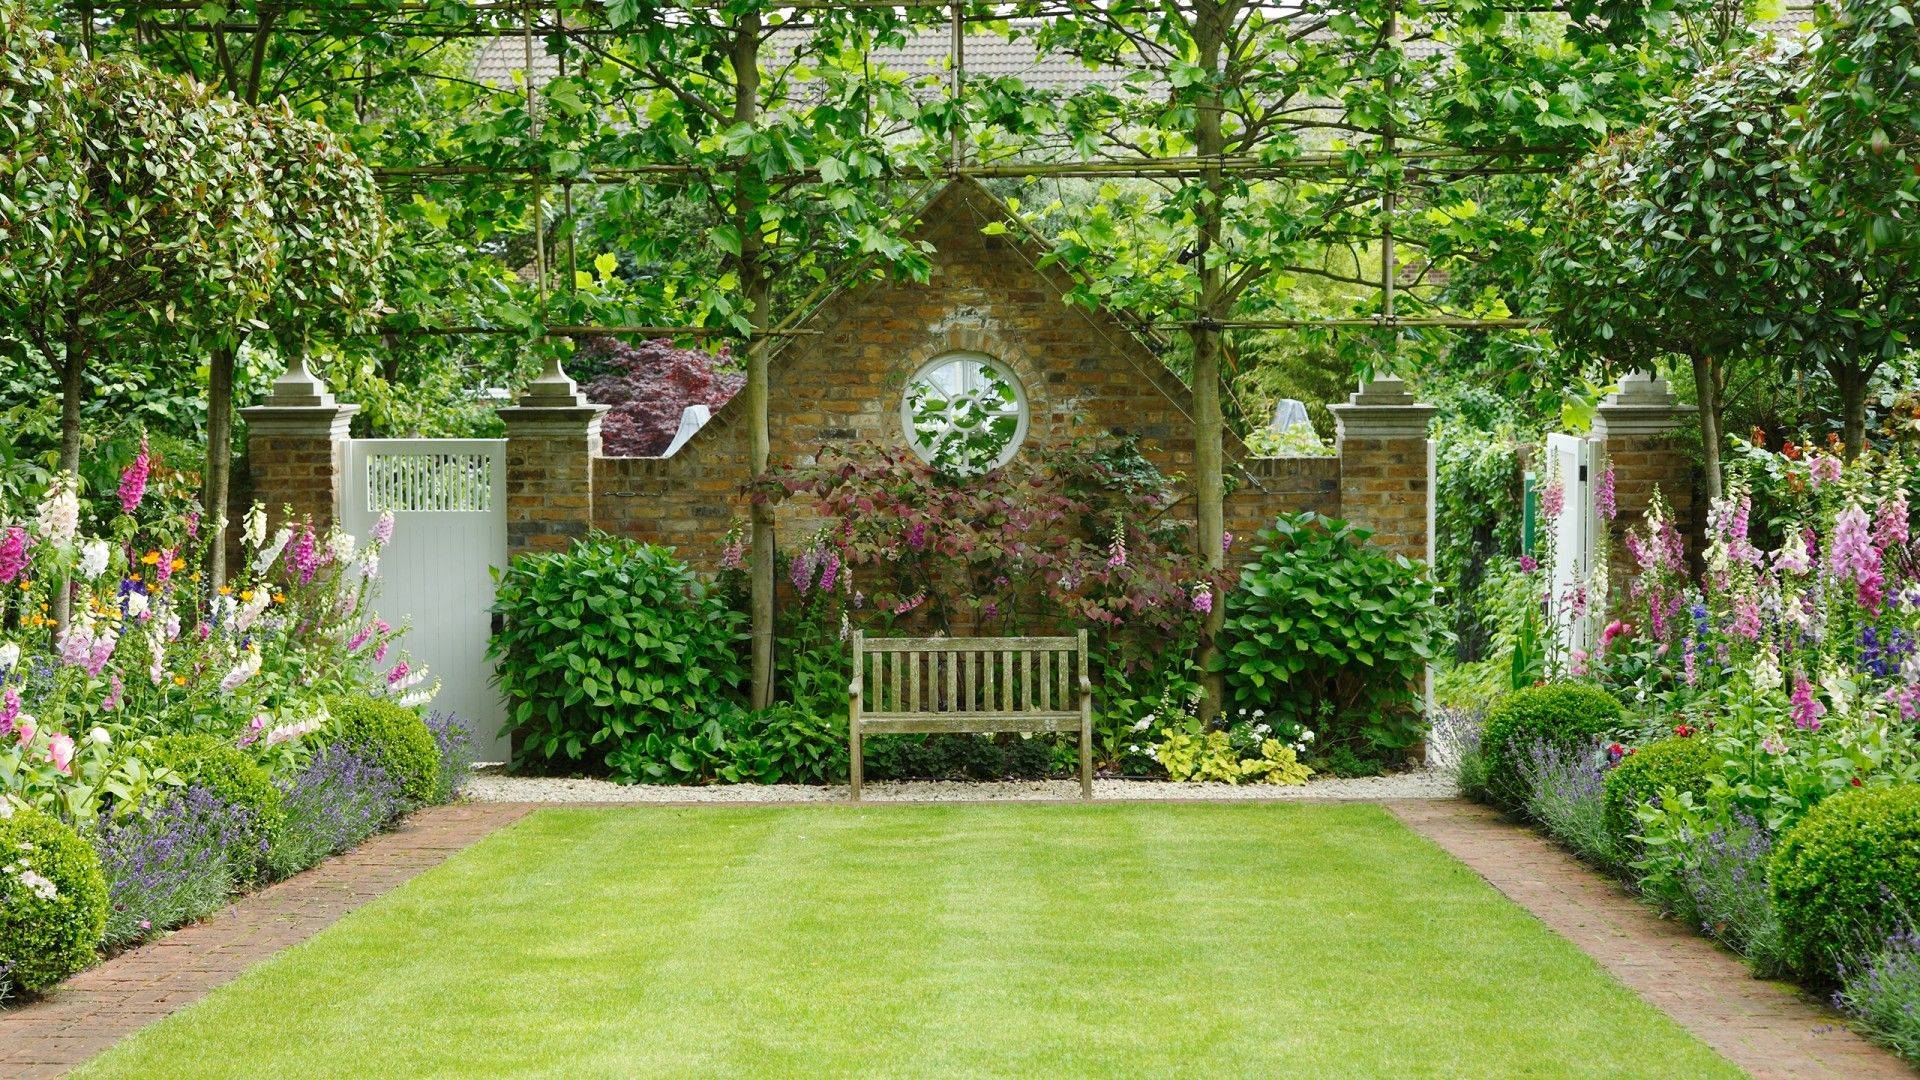 English Garden Design Ideas